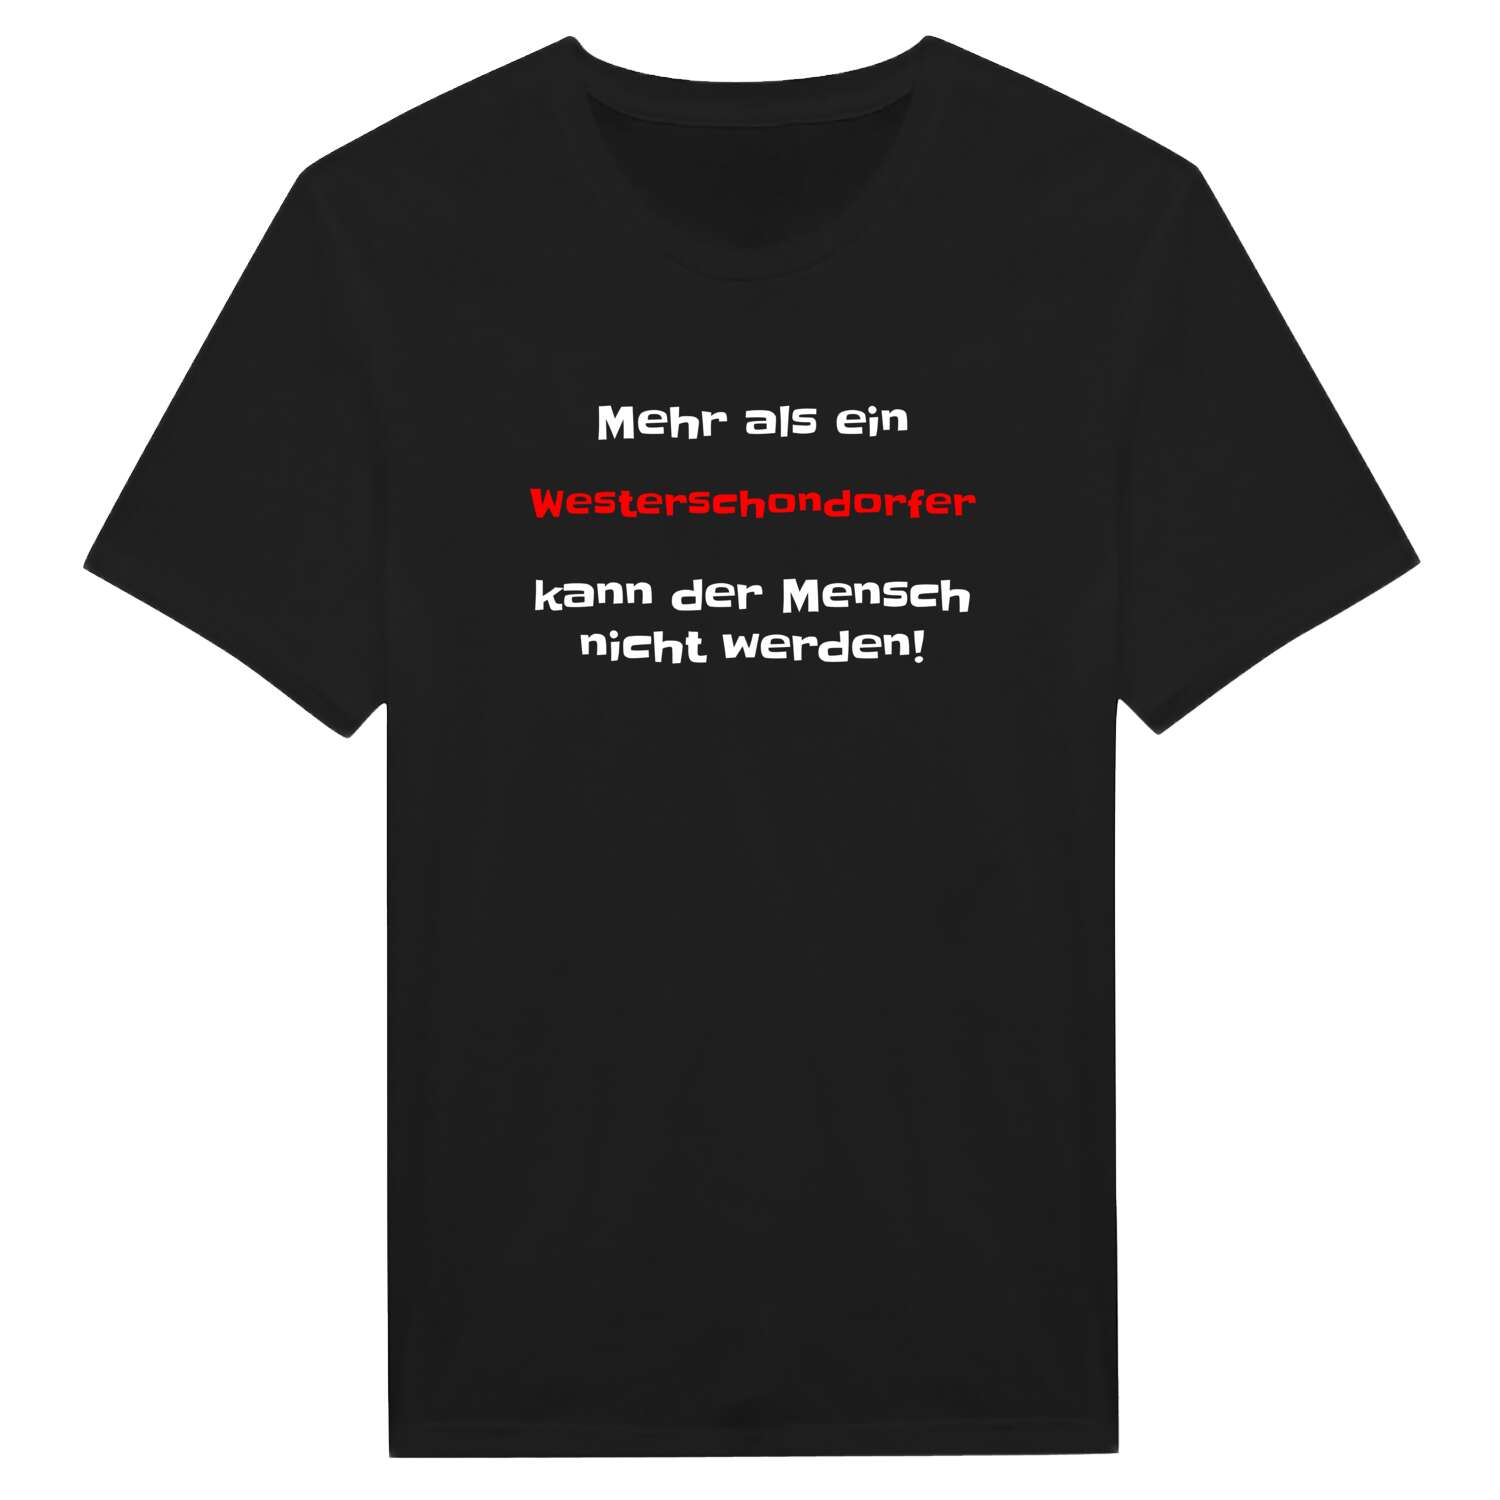 Westerschondorf T-Shirt »Mehr als ein«